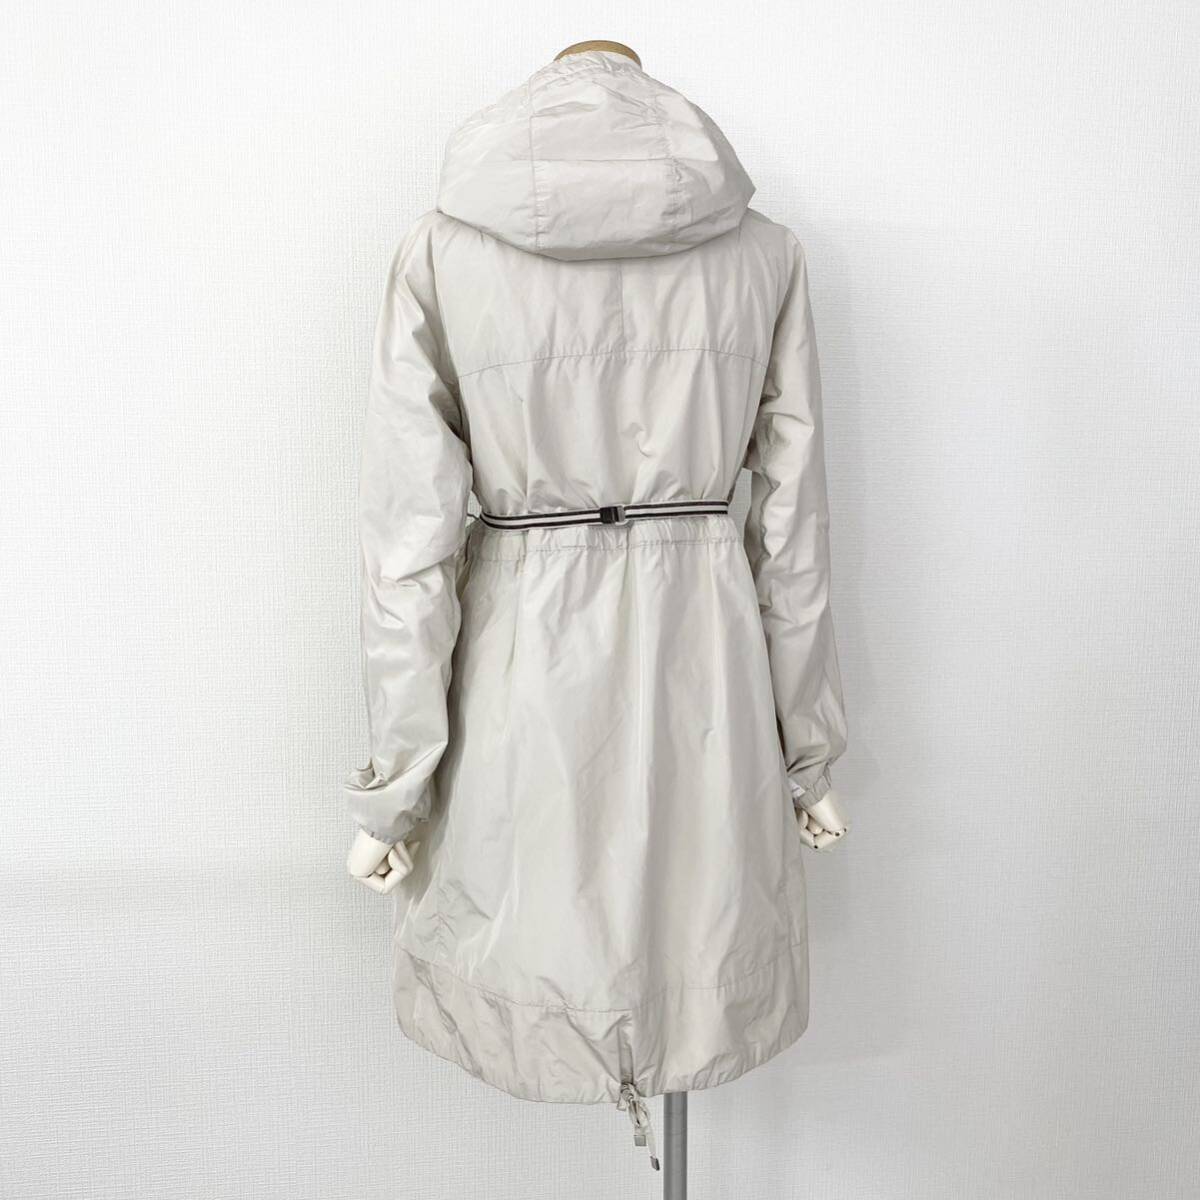 Fe18 S\'Max Maraes Max Mara 2way двусторонний весеннее пальто мельчайший водоотталкивающий плащ с капюшоном .40 L размер соответствует женский 